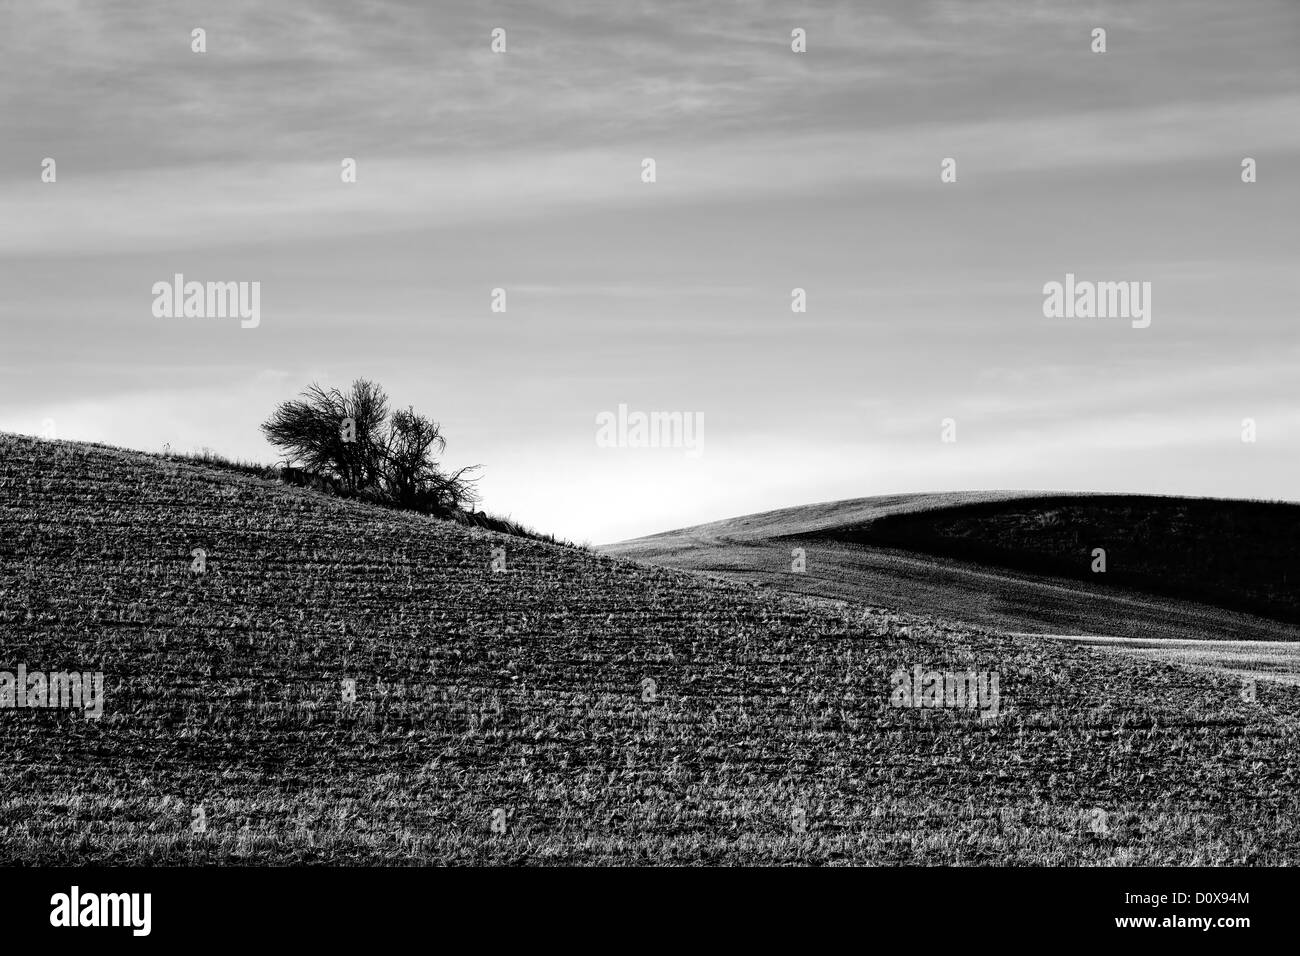 Una immagine in bianco e nero di un lone bush nel mezzo di un campo di fattoria. Foto Stock